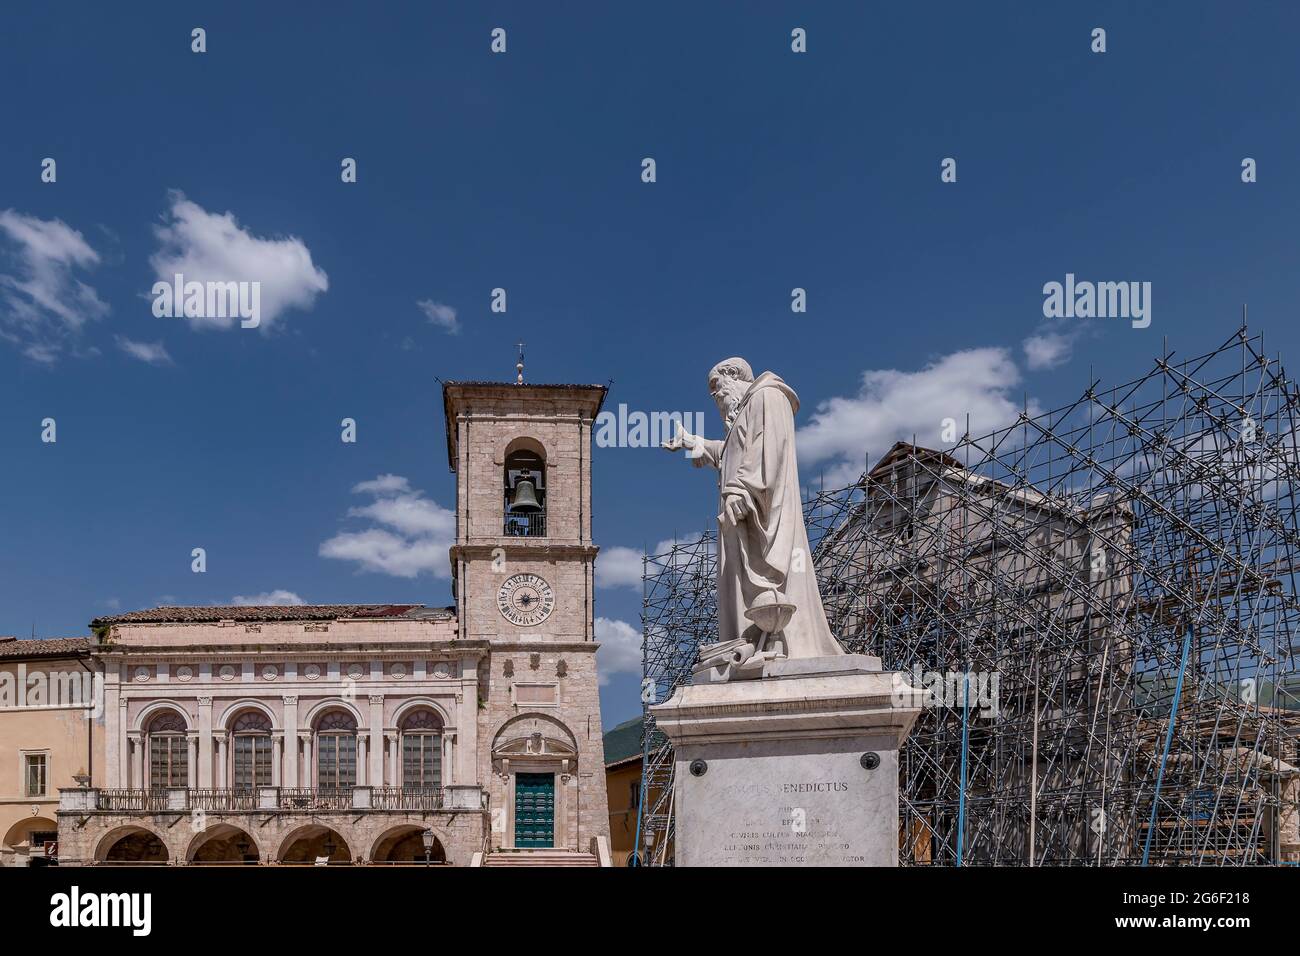 La statua di San Benedetto nell'omonima piazza del centro storico di Norcia, Perugia, Italia Foto Stock